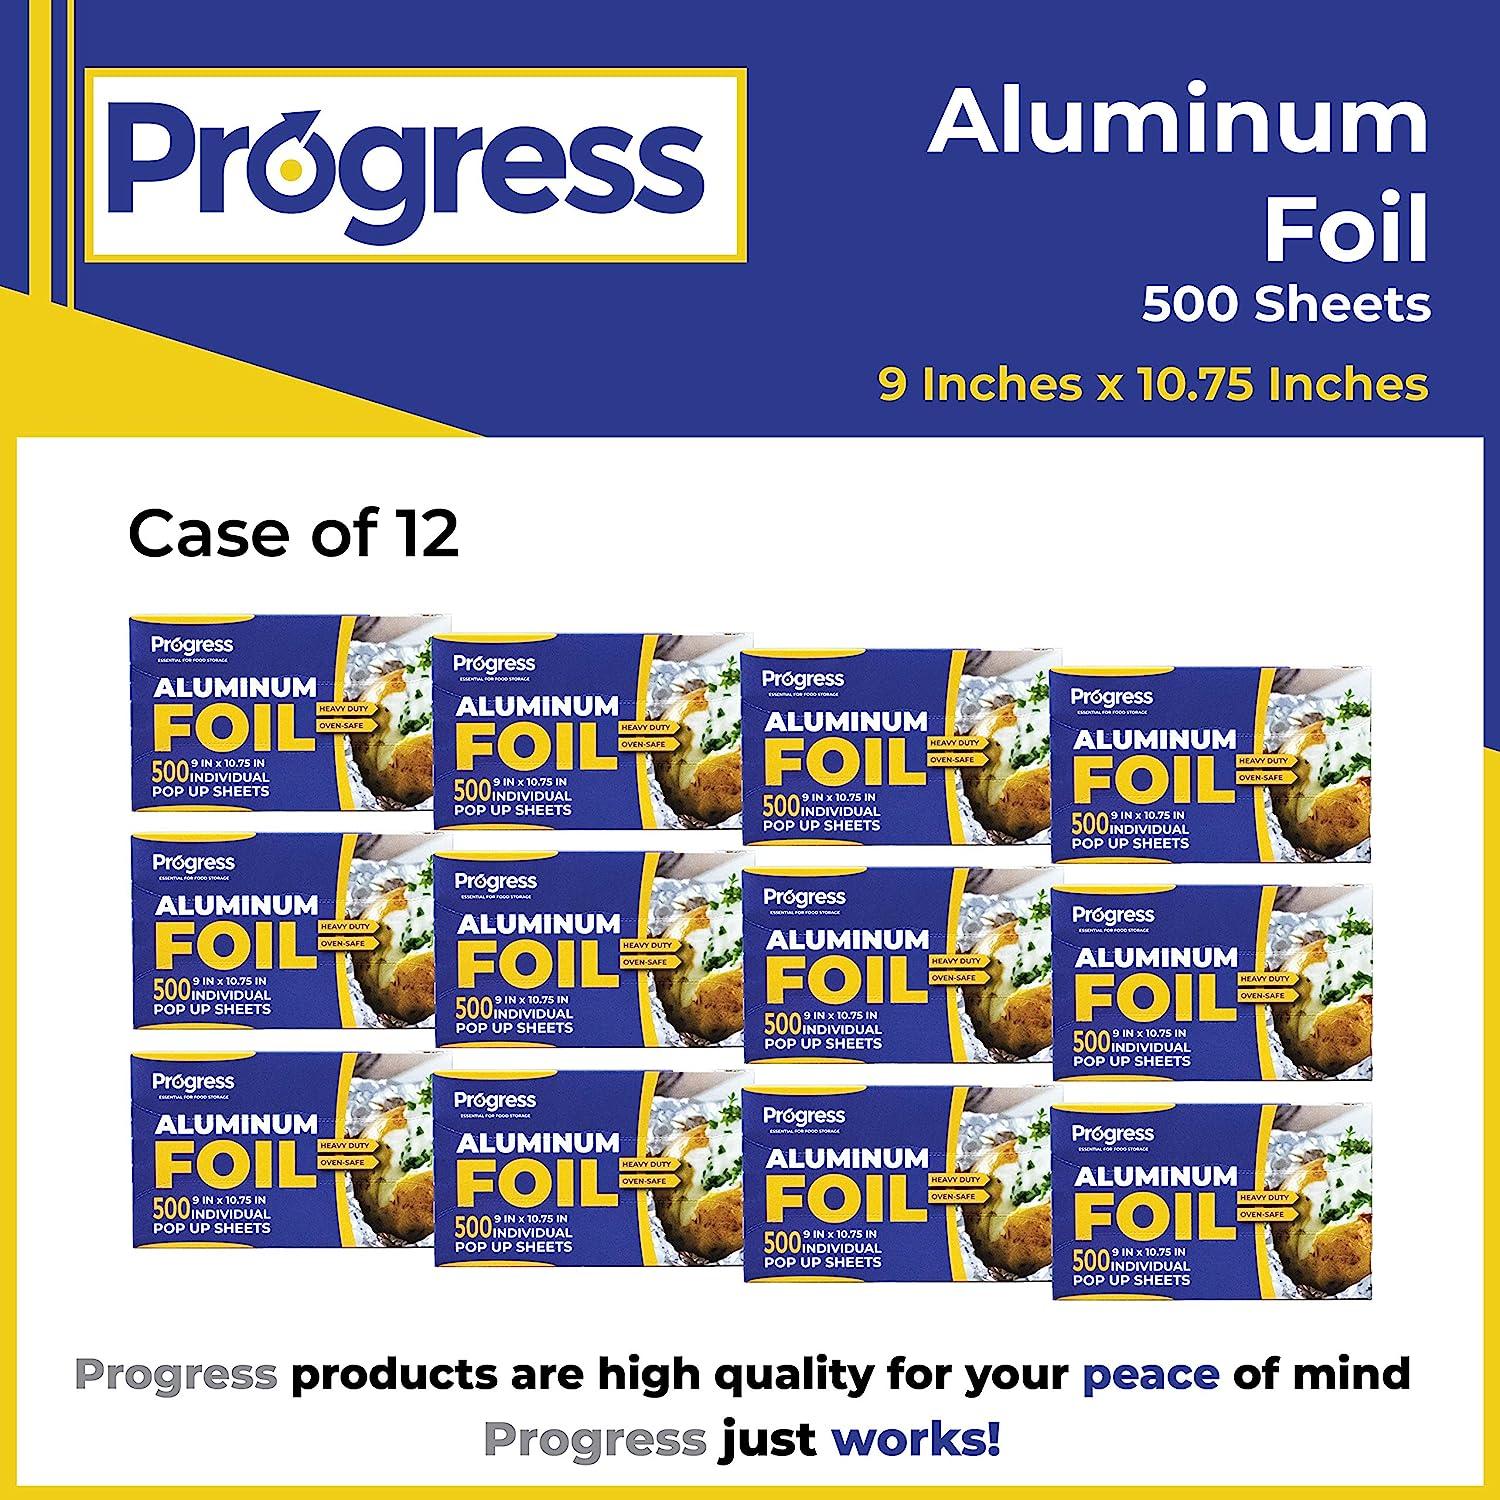 Aluminum Foil Pop-Up Sheets - 9 x 10 3/4